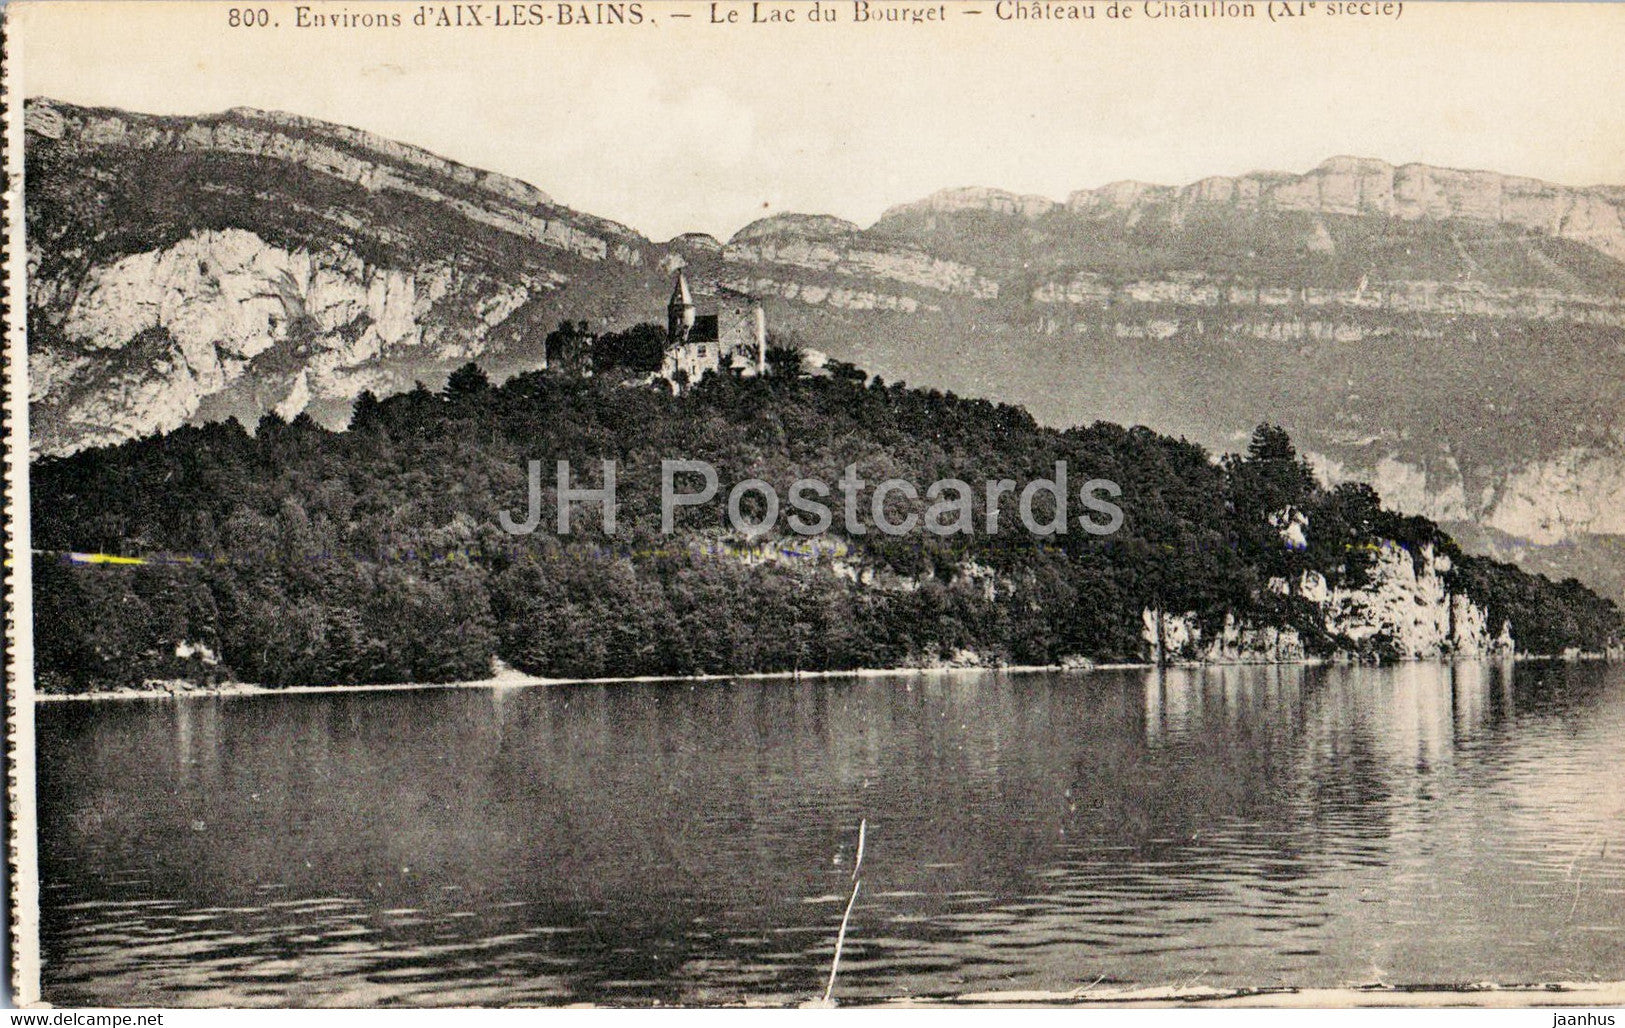 Aix les Bains - Le Lac du Bourget - Chateau de Chatillon - 800 - old postcard - France - unused - JH Postcards